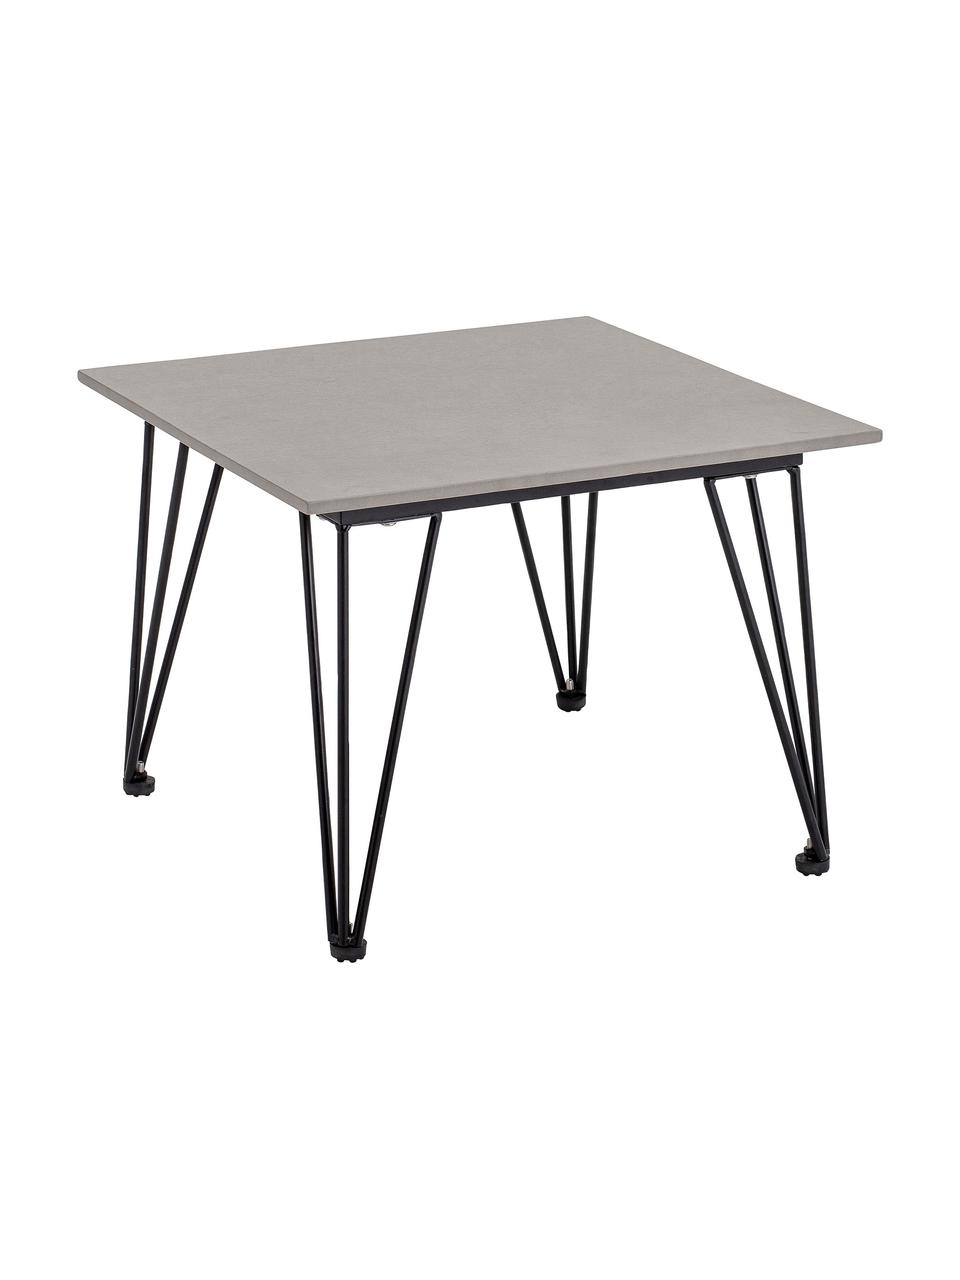 Garten-Beistelltisch Mundo aus Beton, Tischplatte: Beton, Beine: Metall, beschichtet, Grau, Schwarz, B 55 x H 42 cm